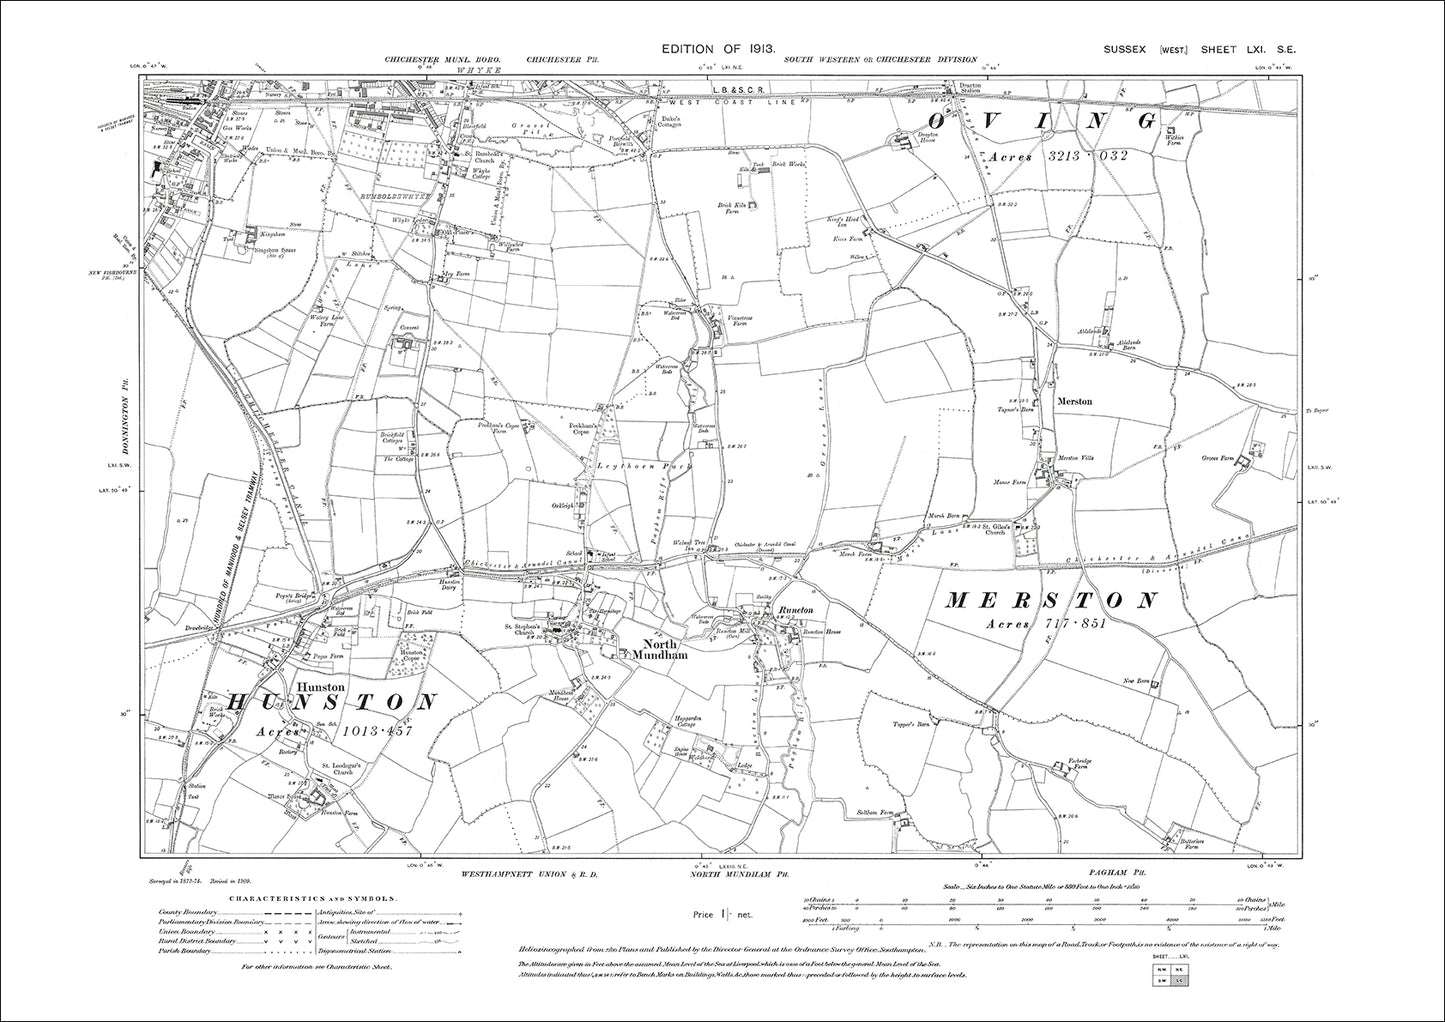 Hunston, North Mundham, Runcton, Merston, old map Sussex 1913: 61SE